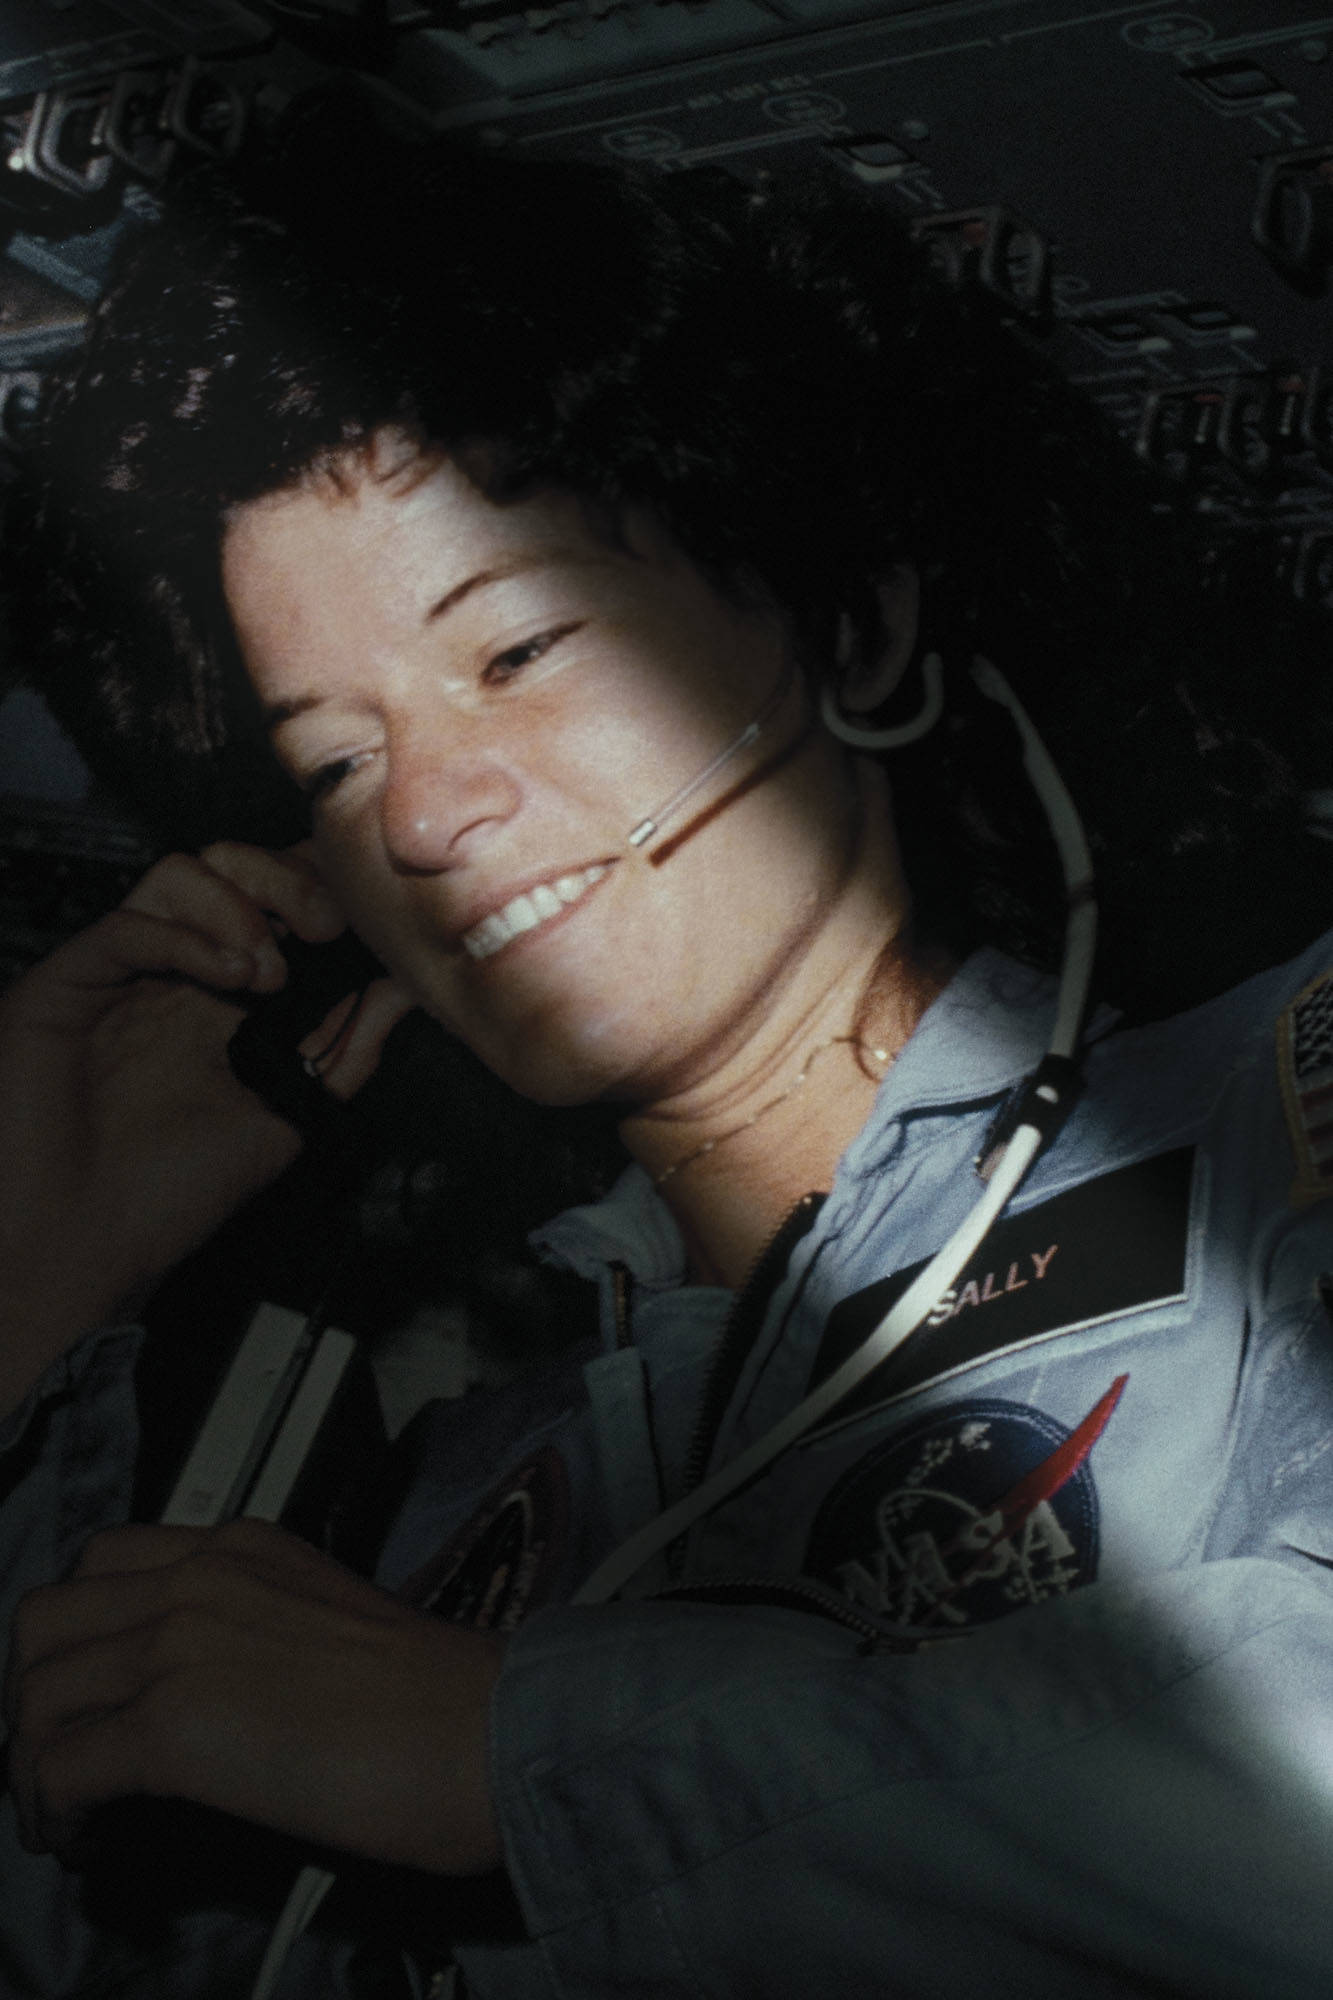 Sally Ride durante una misión espacial